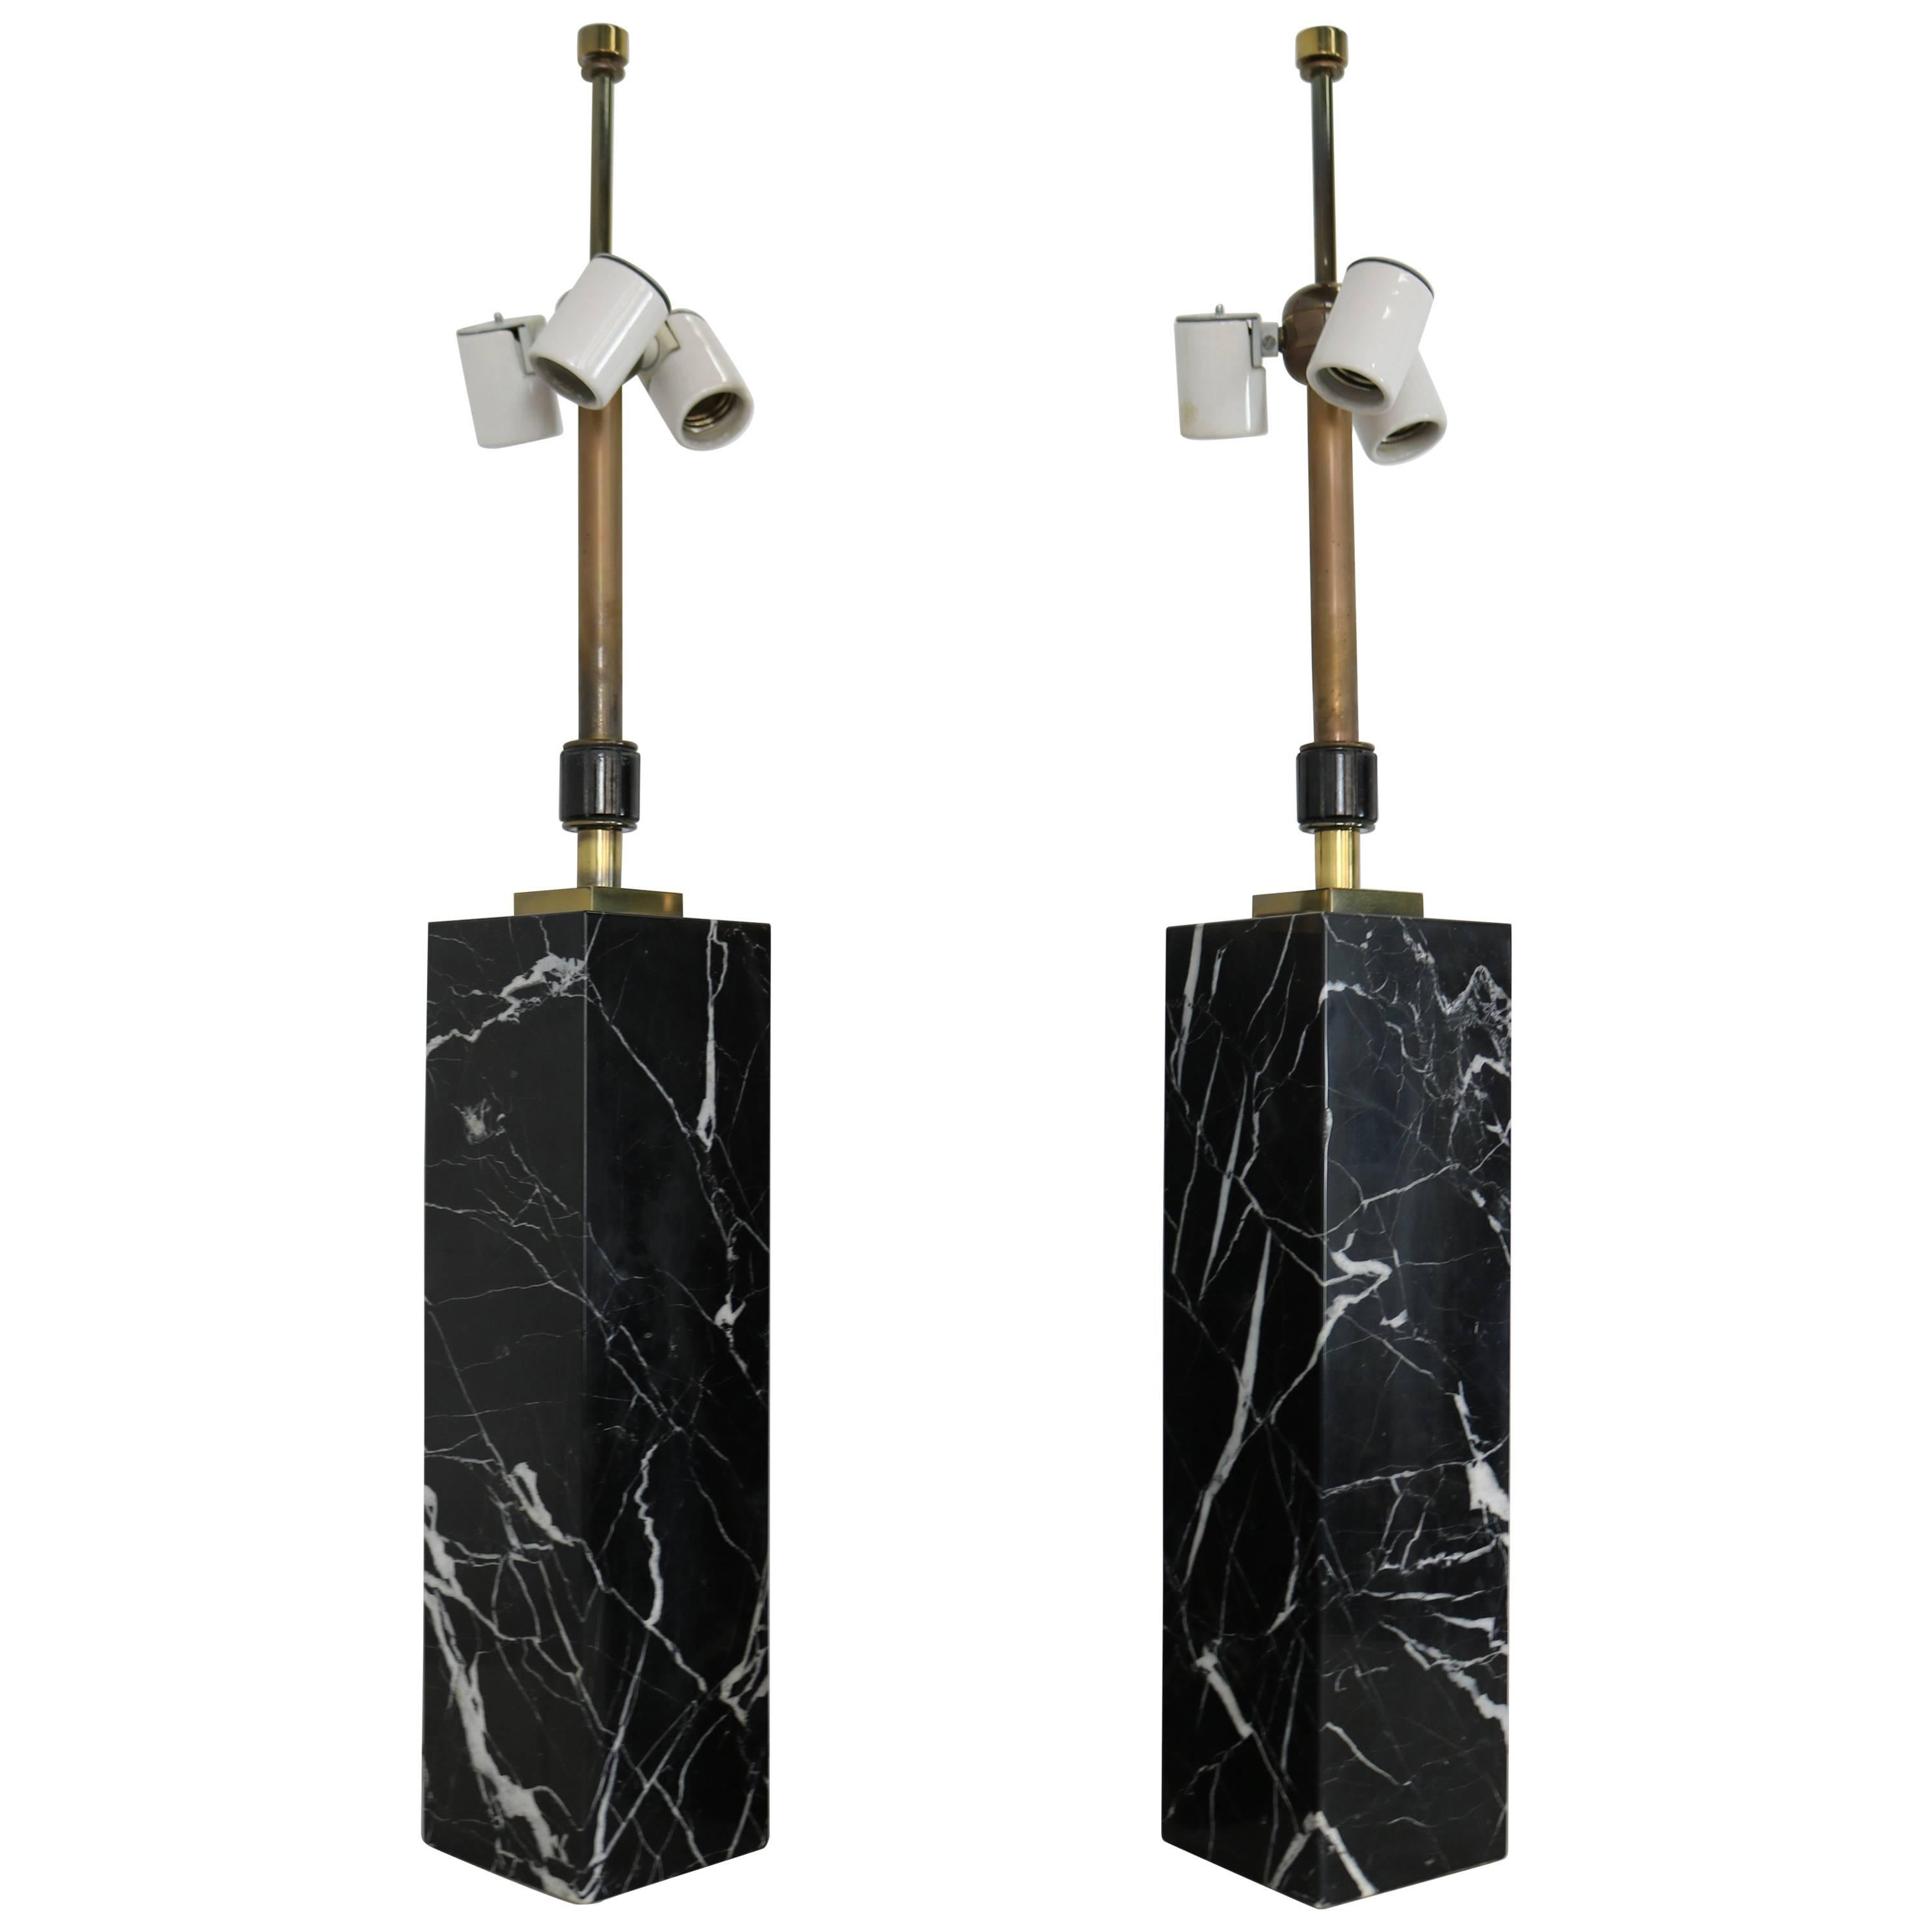 Exquisite Pair of Black Marble Column Lamps by T.H. Robsjohn-Gibbings for Hansen